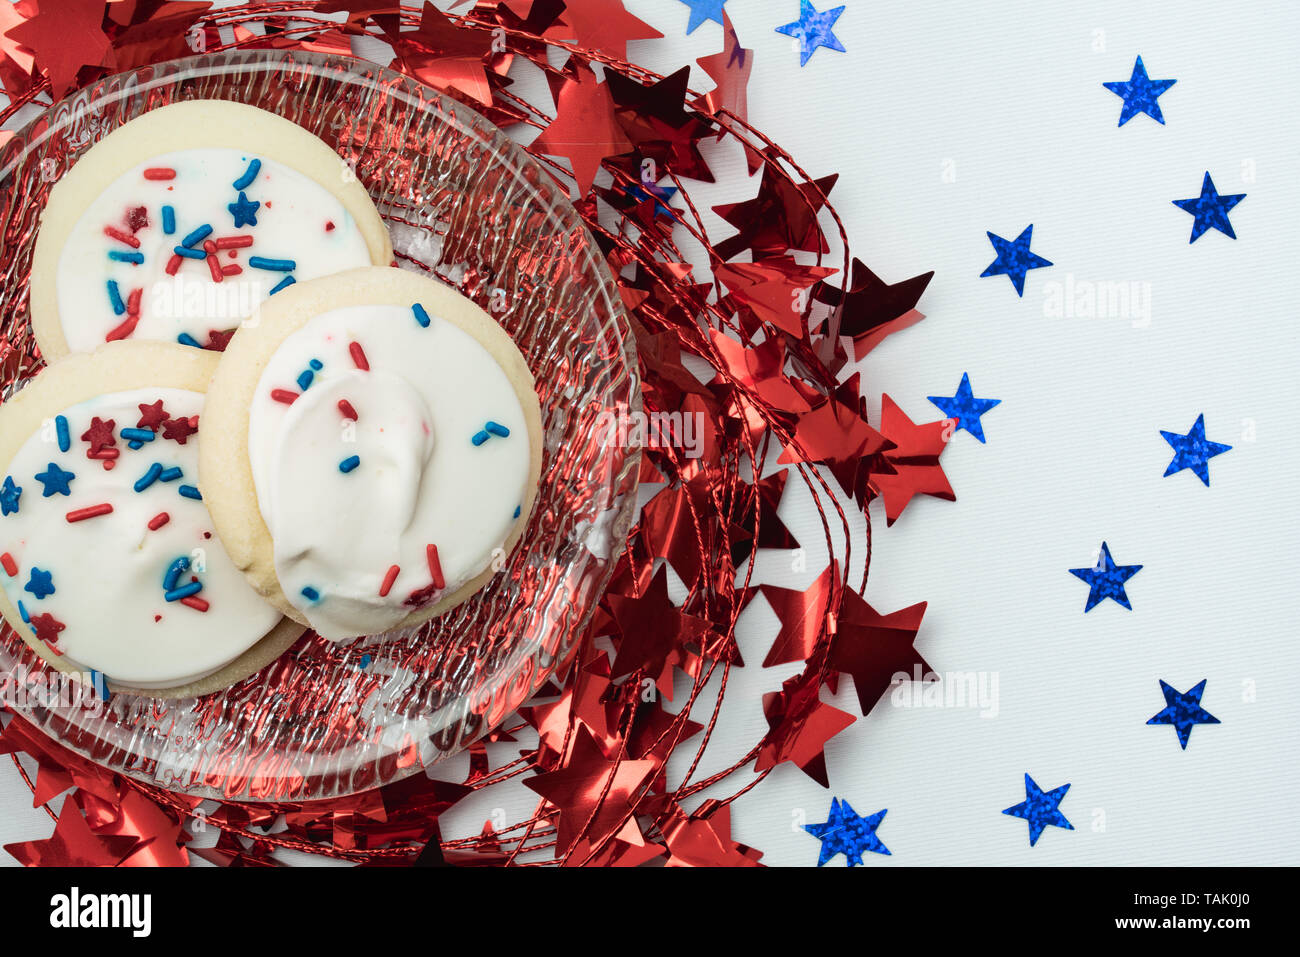 Brillante lucido stella rossa garland sotto una lastra di vetro con zucchero biscotti ricoperti di glassa bianca e spruzza e blu glitter stelle su un tavolo bianco Foto Stock